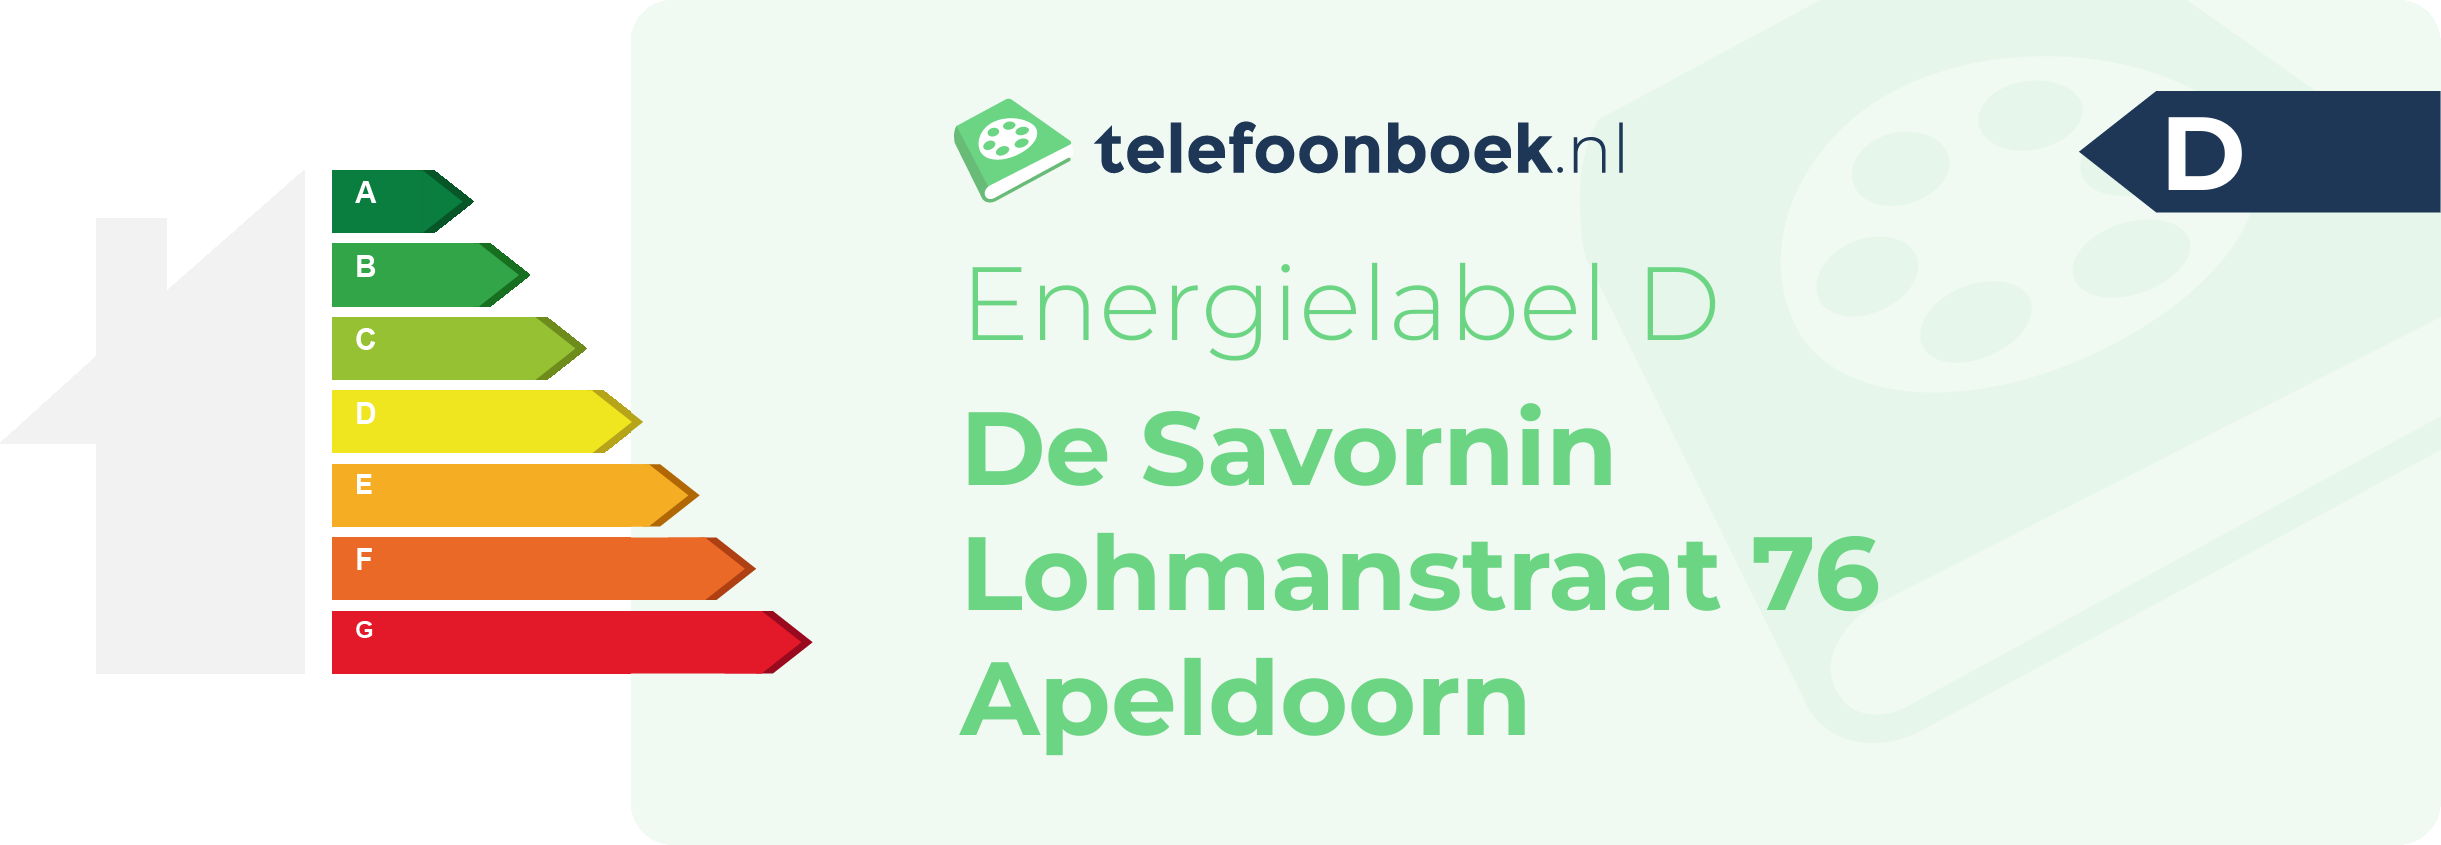 Energielabel De Savornin Lohmanstraat 76 Apeldoorn